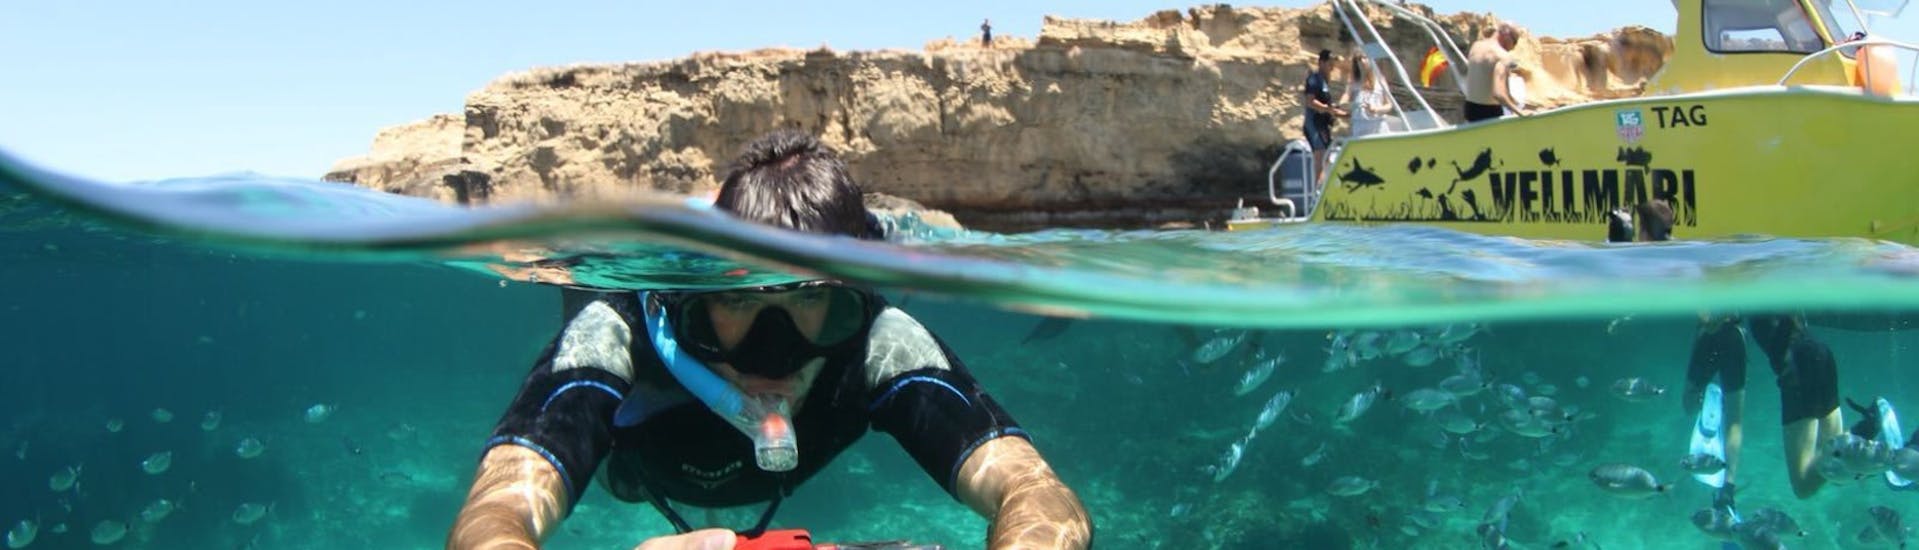 Jongen met camera onder water aan het snorkelen omringd door veel vis tijdens Snorkelen in het Natuurpark van Ses Salines vanuit Formentera met Vellmari Diving Center Formentera.